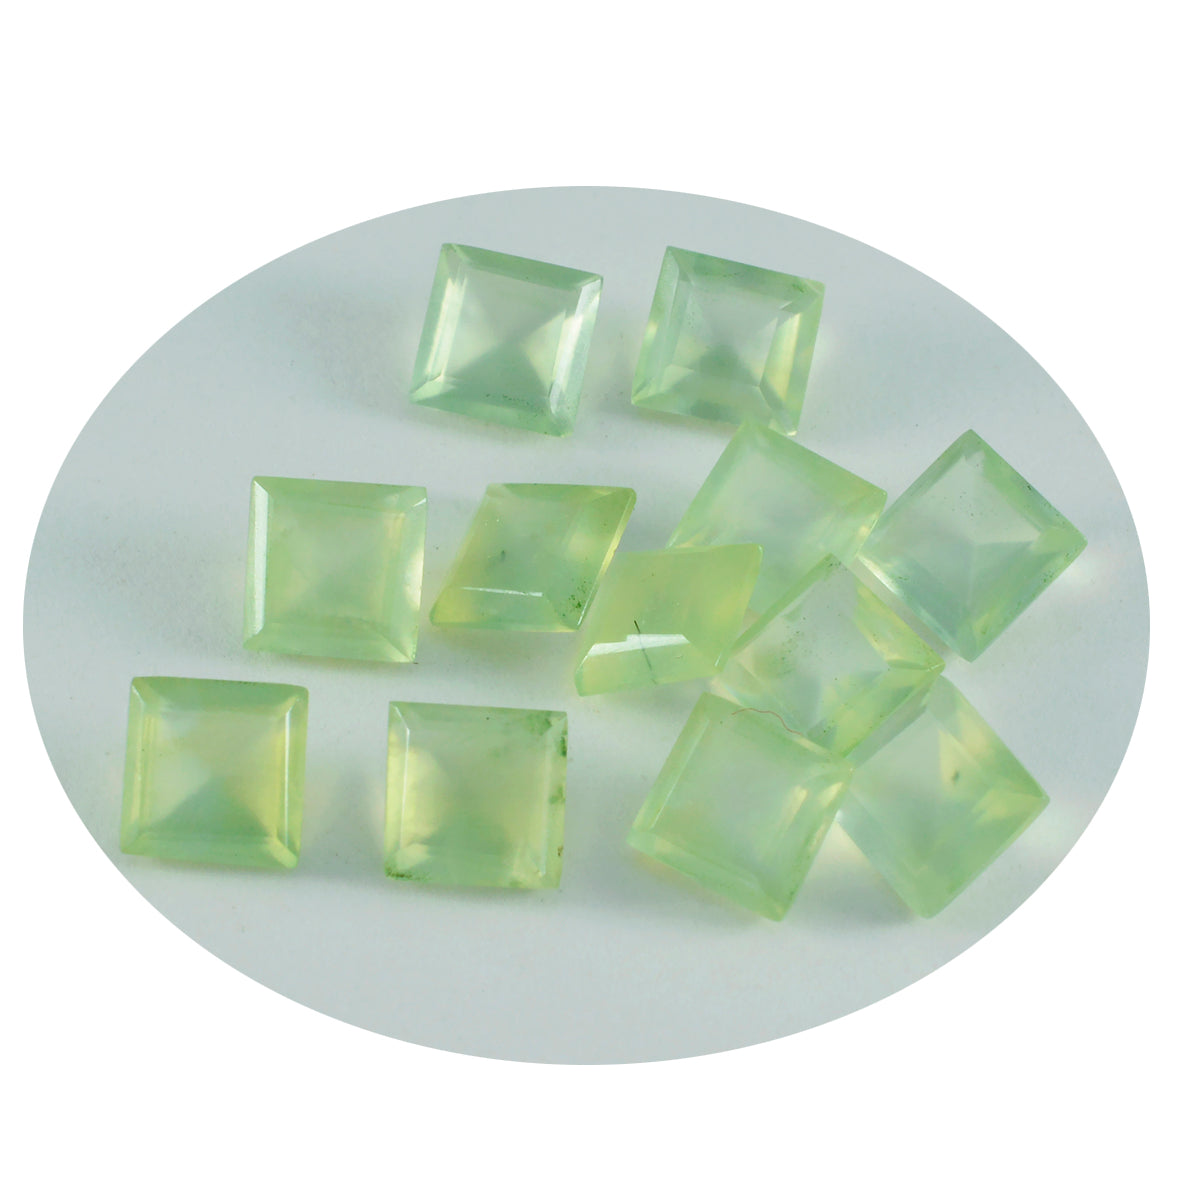 riyogems 1 st grön prehnit fasetterad 7x7 mm kvadratisk form snygg kvalitetsädelsten